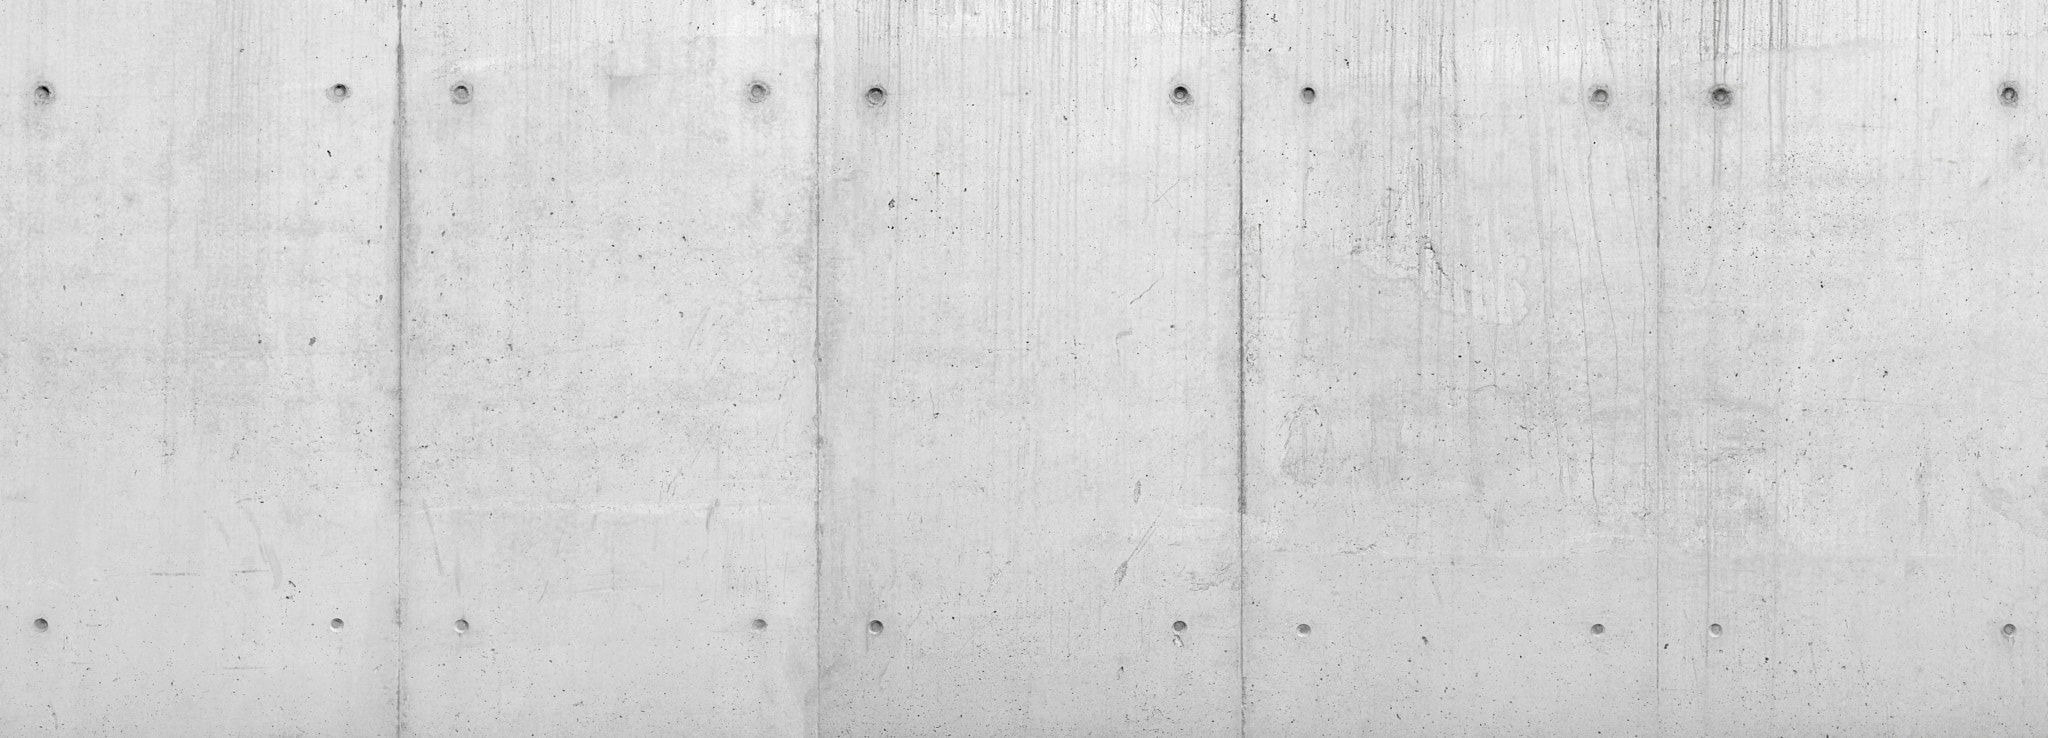 Canon EOS 50D sample photo. Concrete wall textur photography